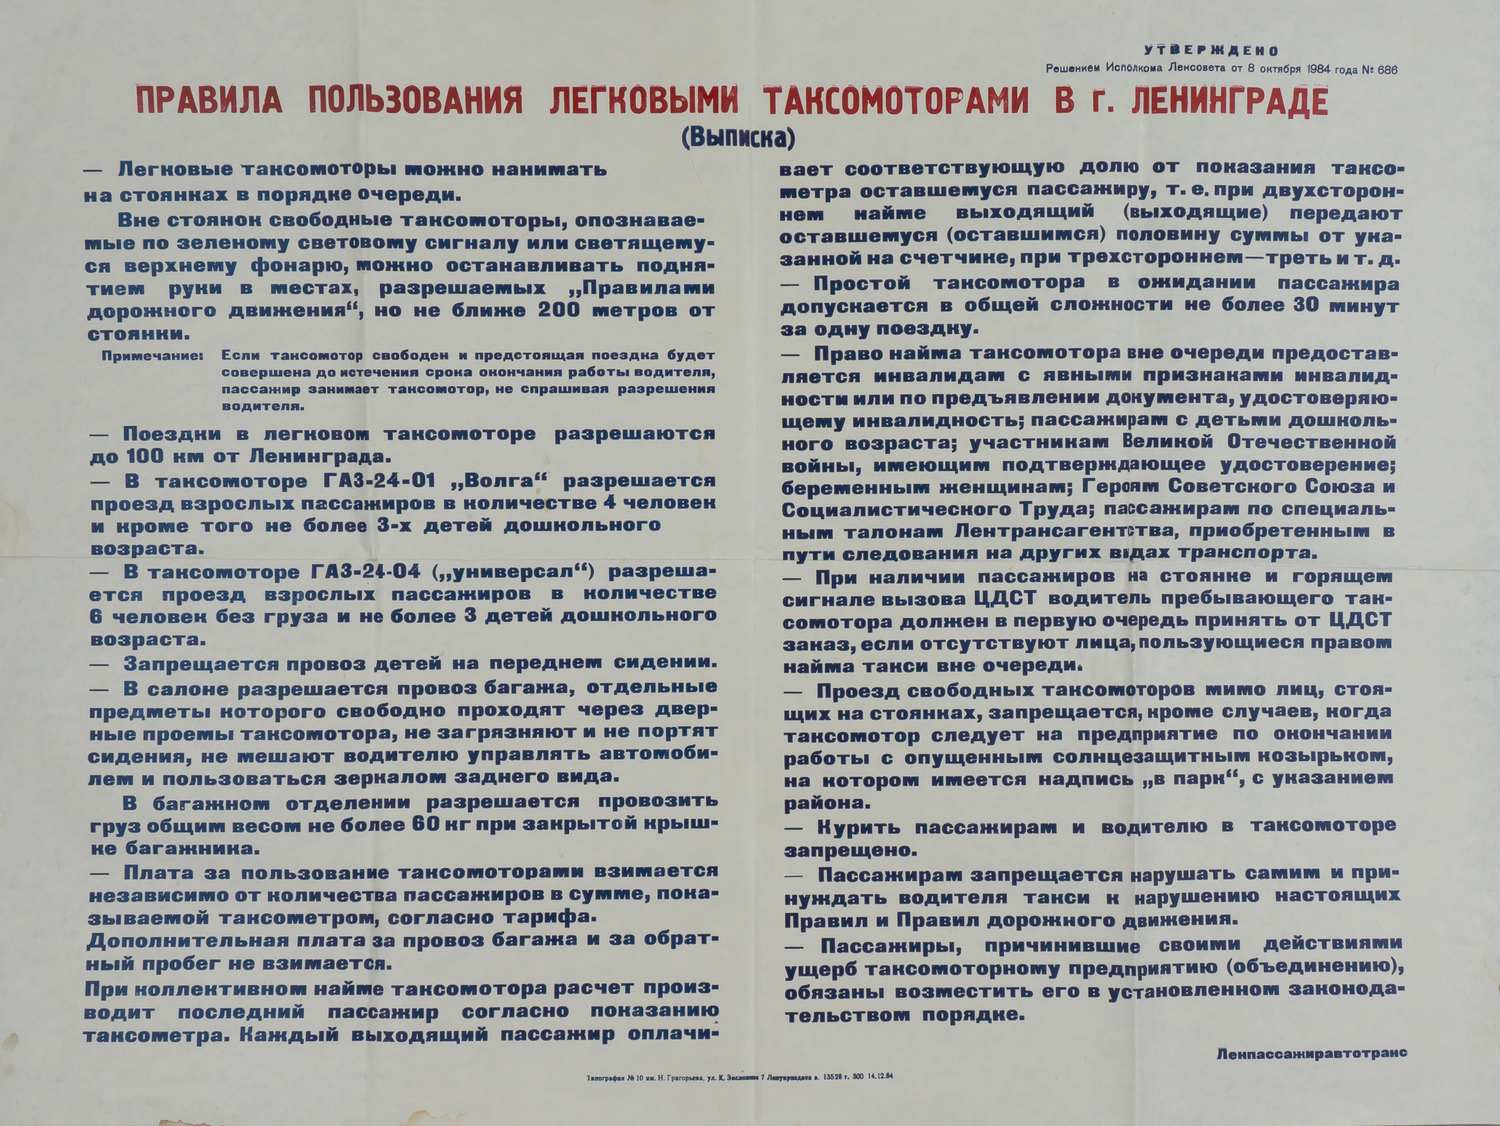 Правила пользования легковыми таксомоторами в г. Ленинграде. 1984.